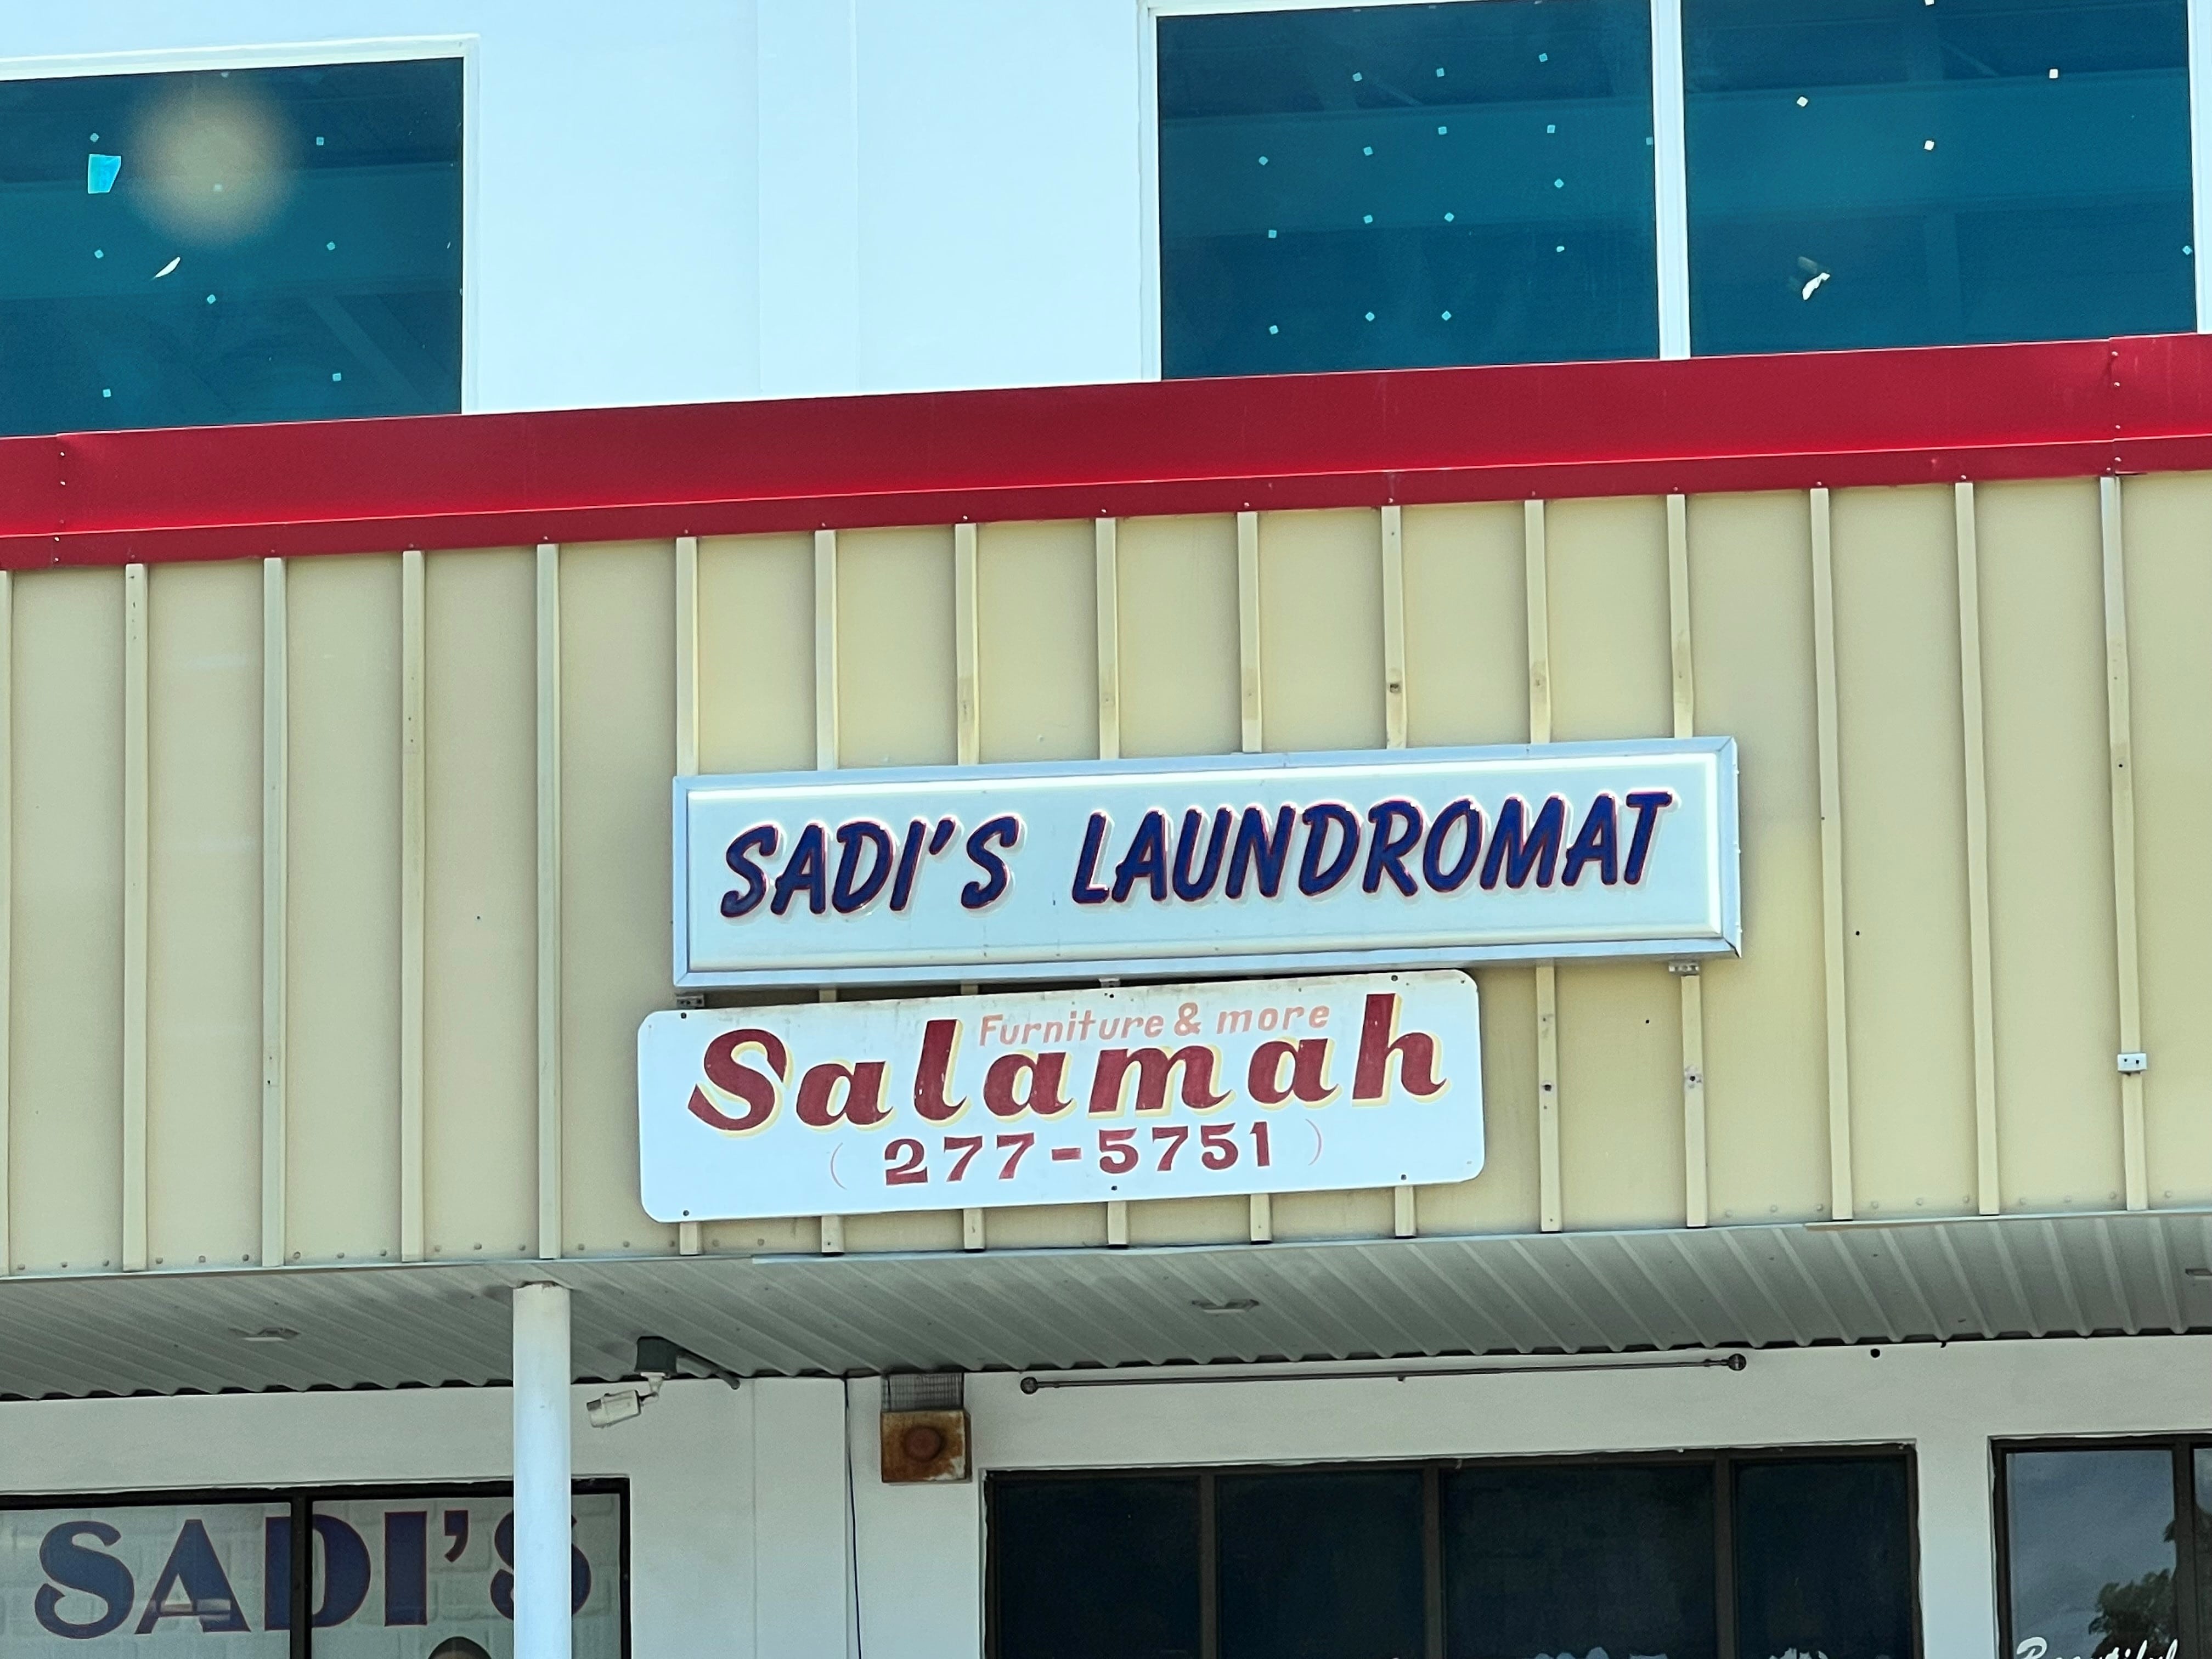 Sadi's Laundromat